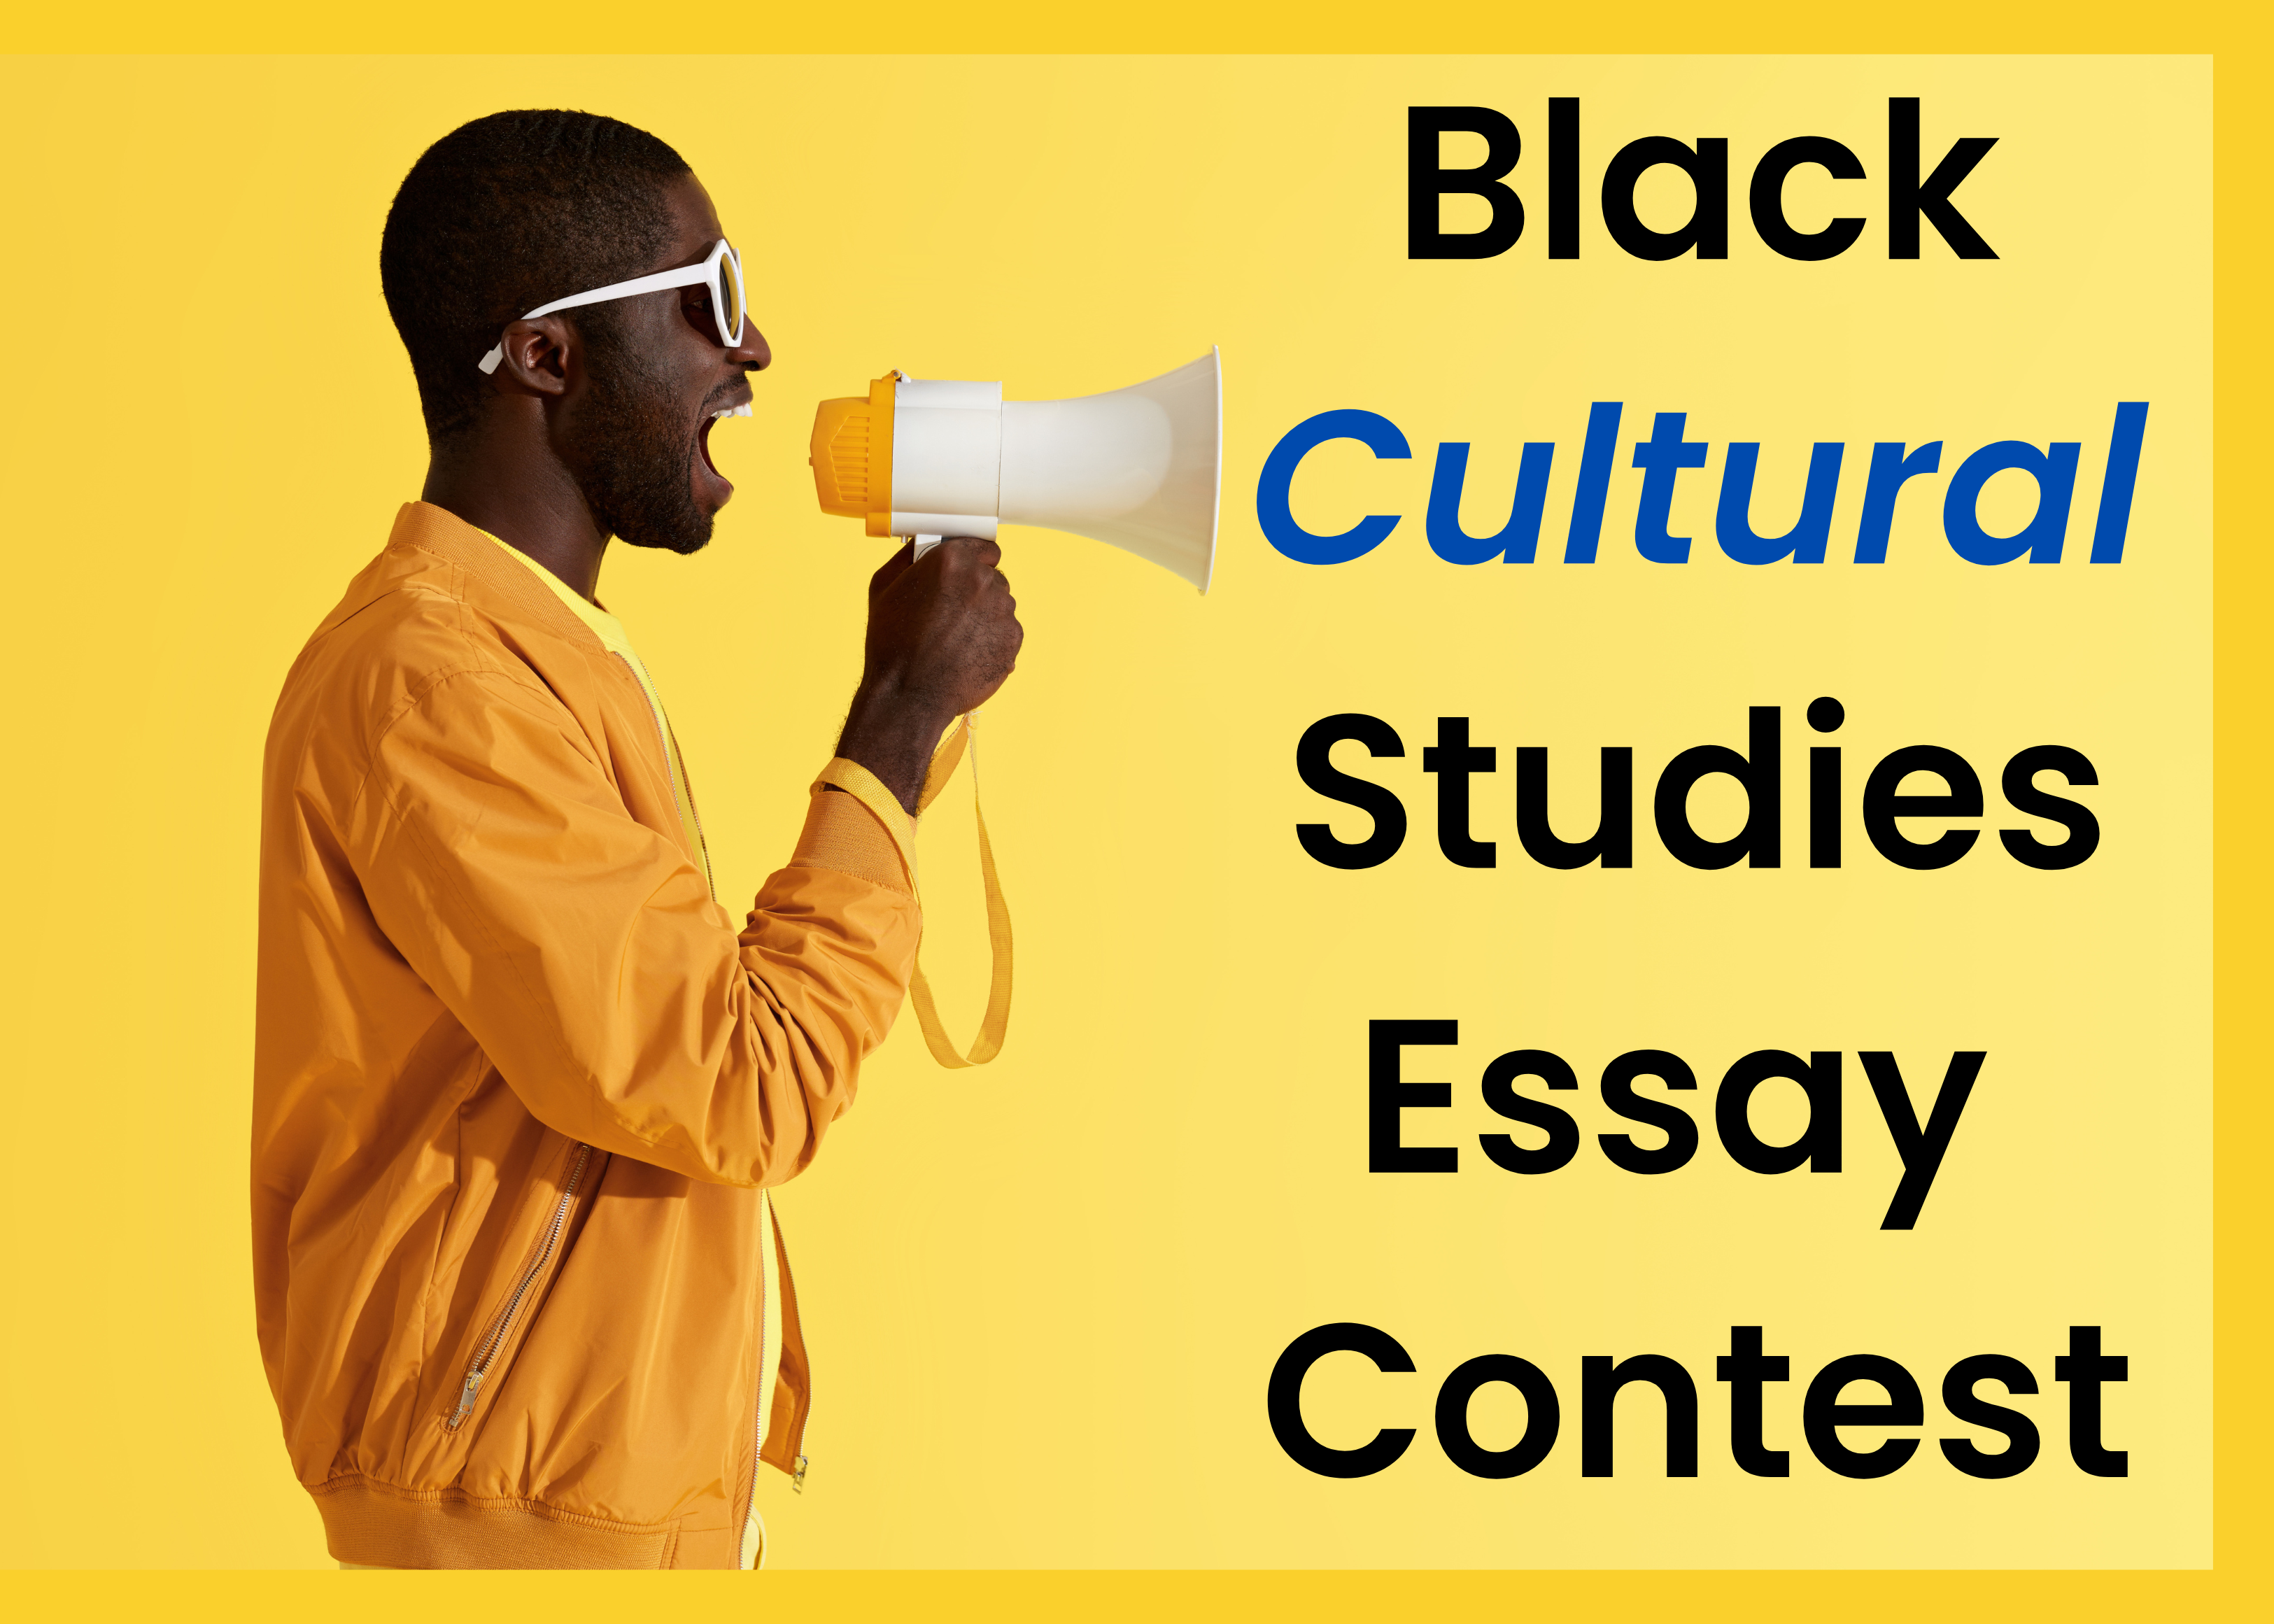 Black Cultural Studies Essay Contest